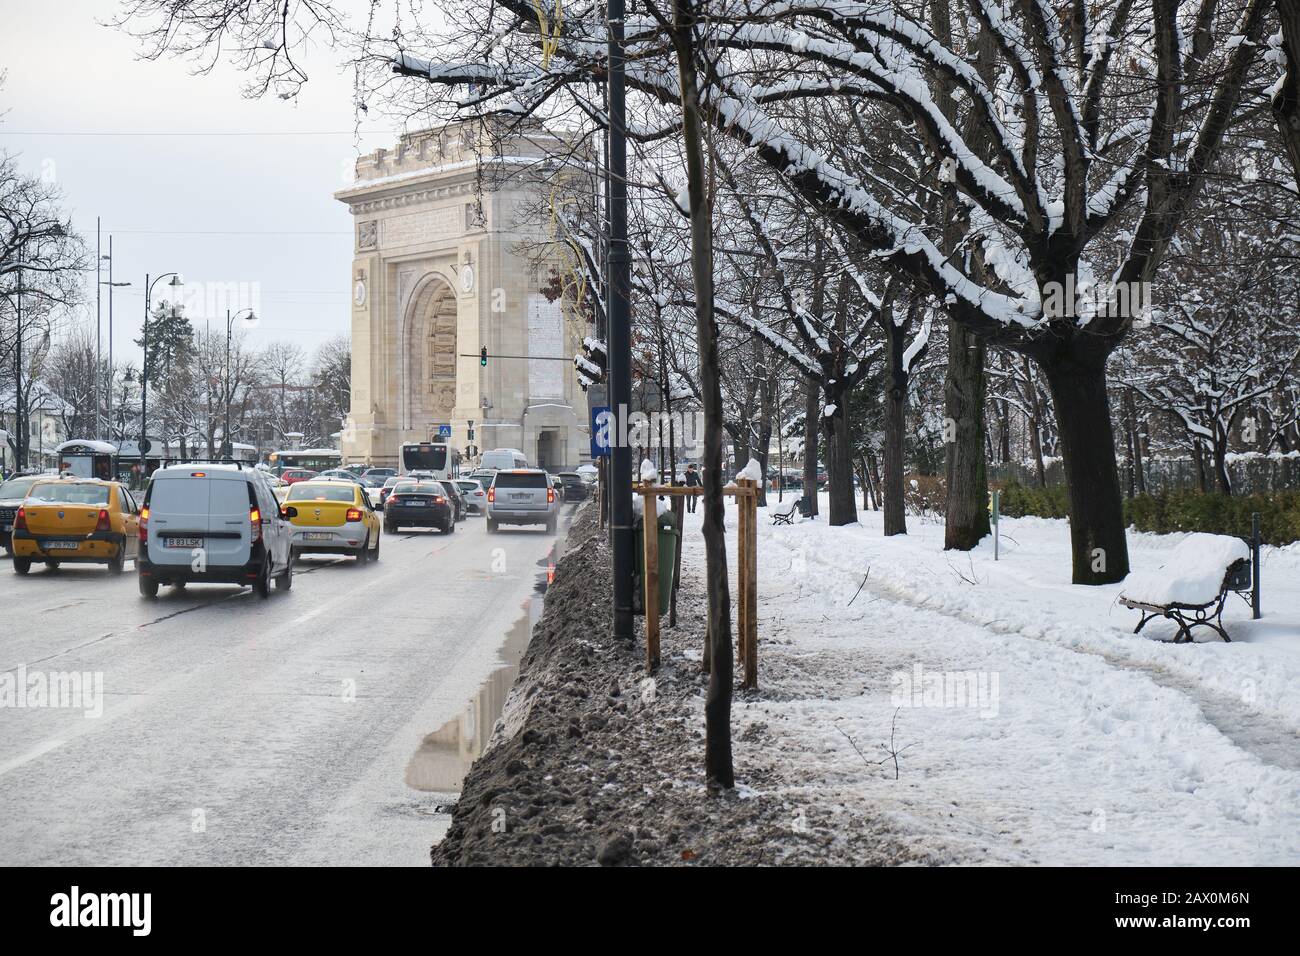 Bucarest, Rumania - 6 de febrero de 2020: Contraste entre una carretera de automóviles despejada y una acera cubierta de nieve con un sendero estrecho hecho por los peatones, en Foto de stock